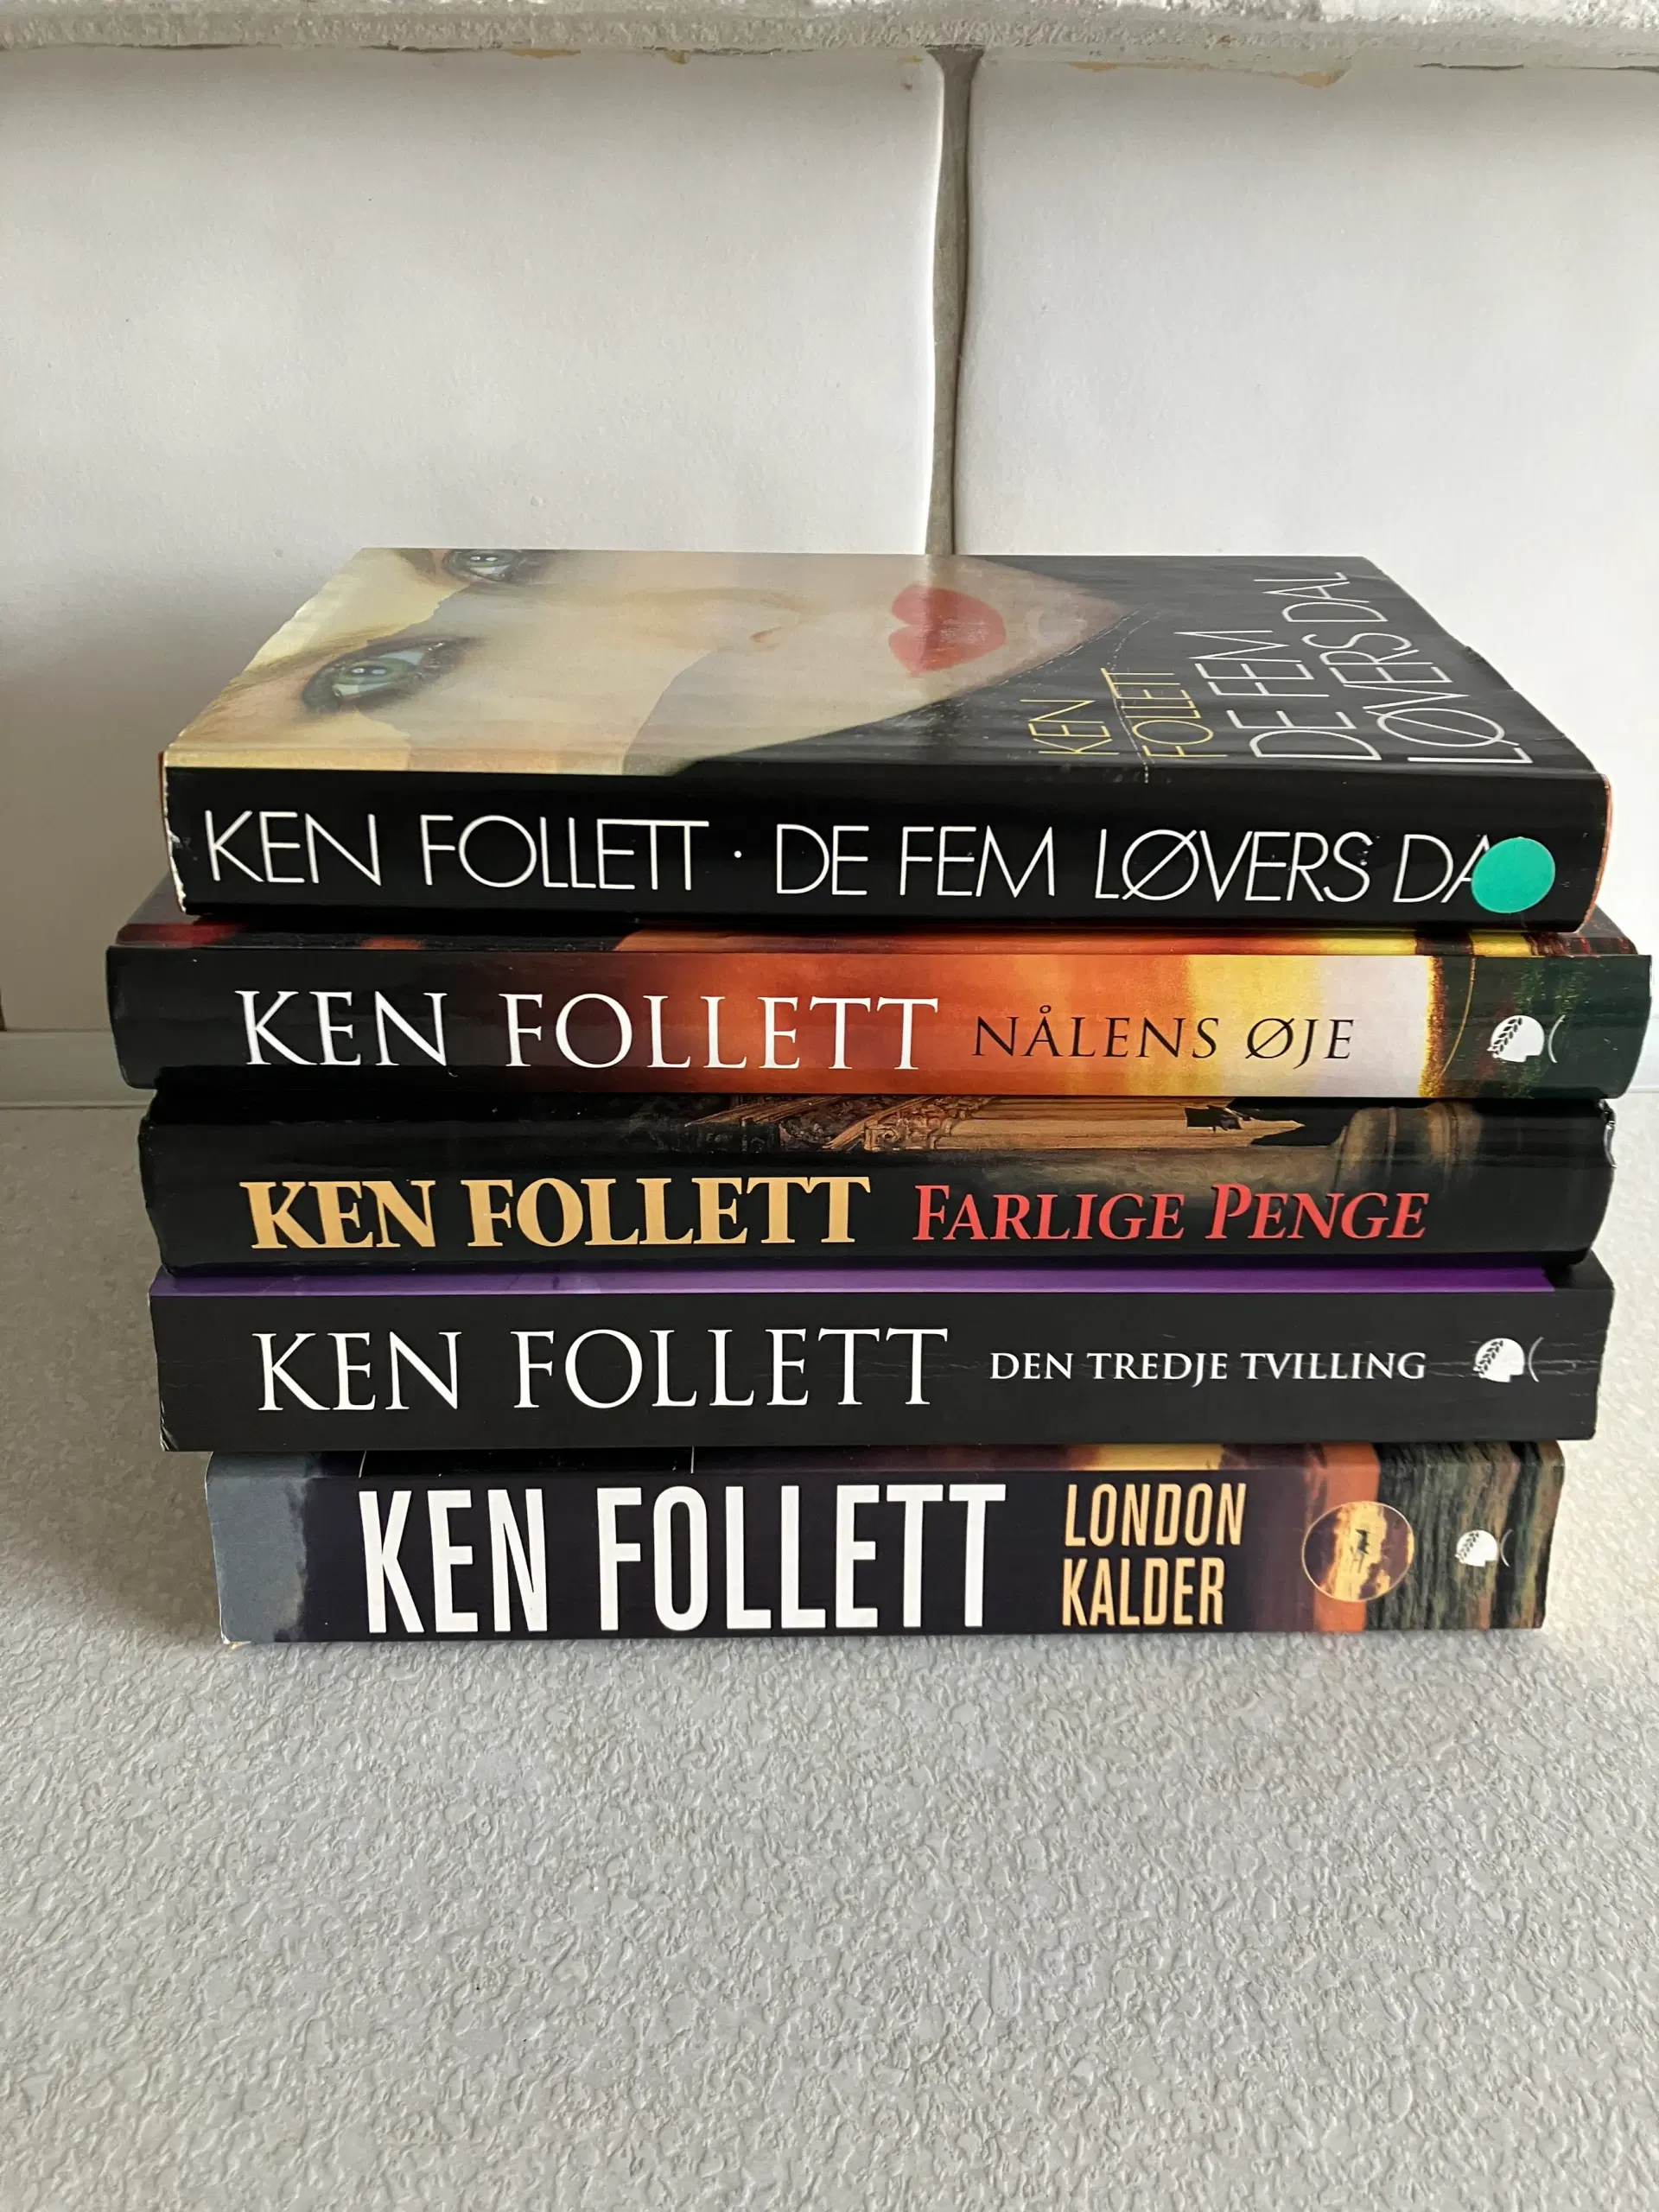 Bøger af forfatteren Ken Follett 5 stk